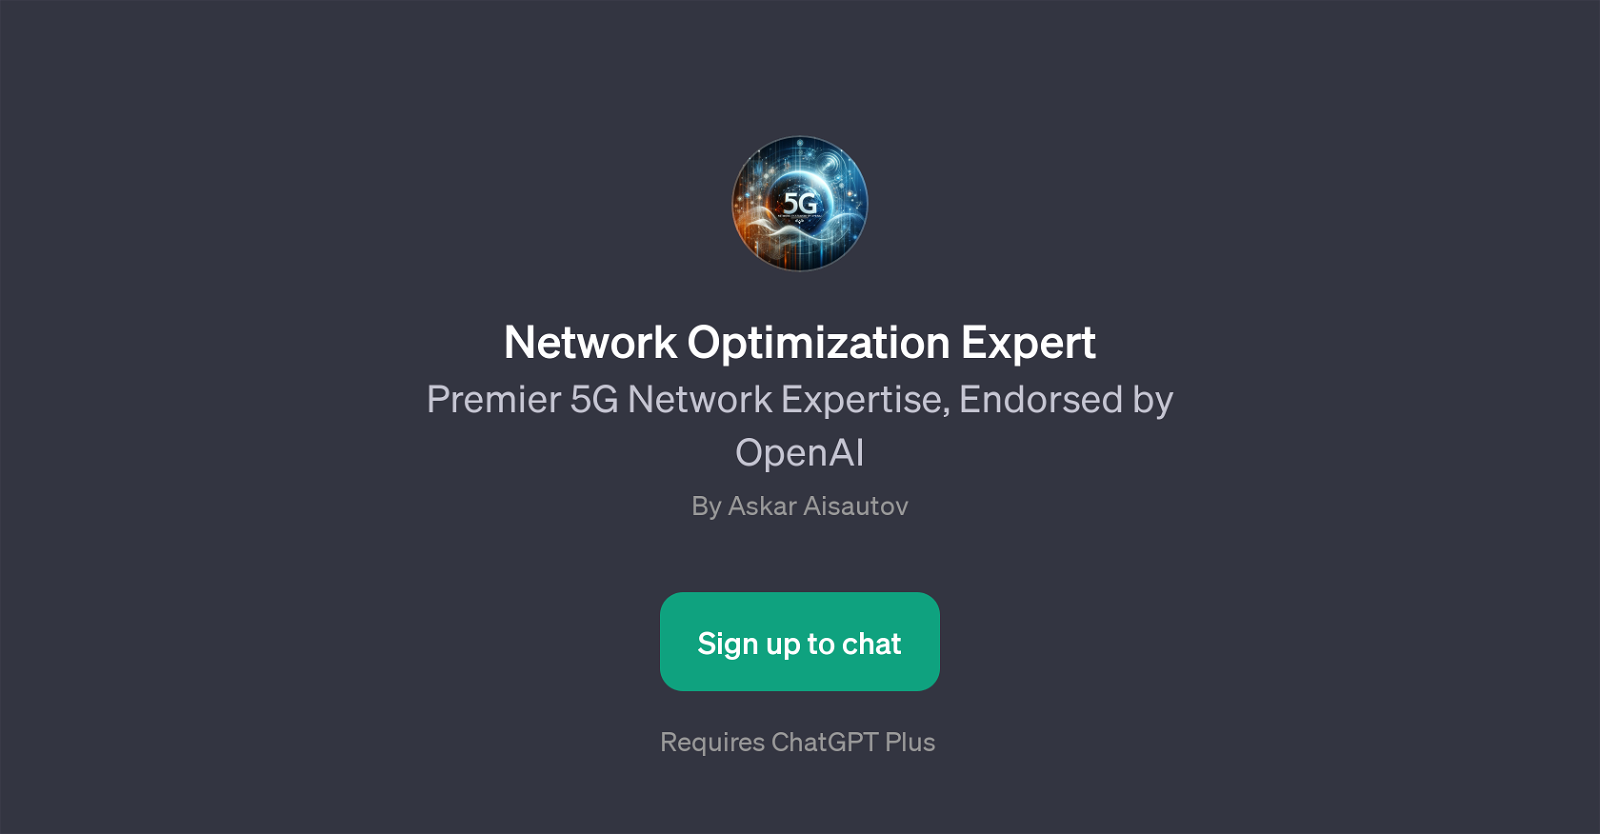 Network Optimization Expert website